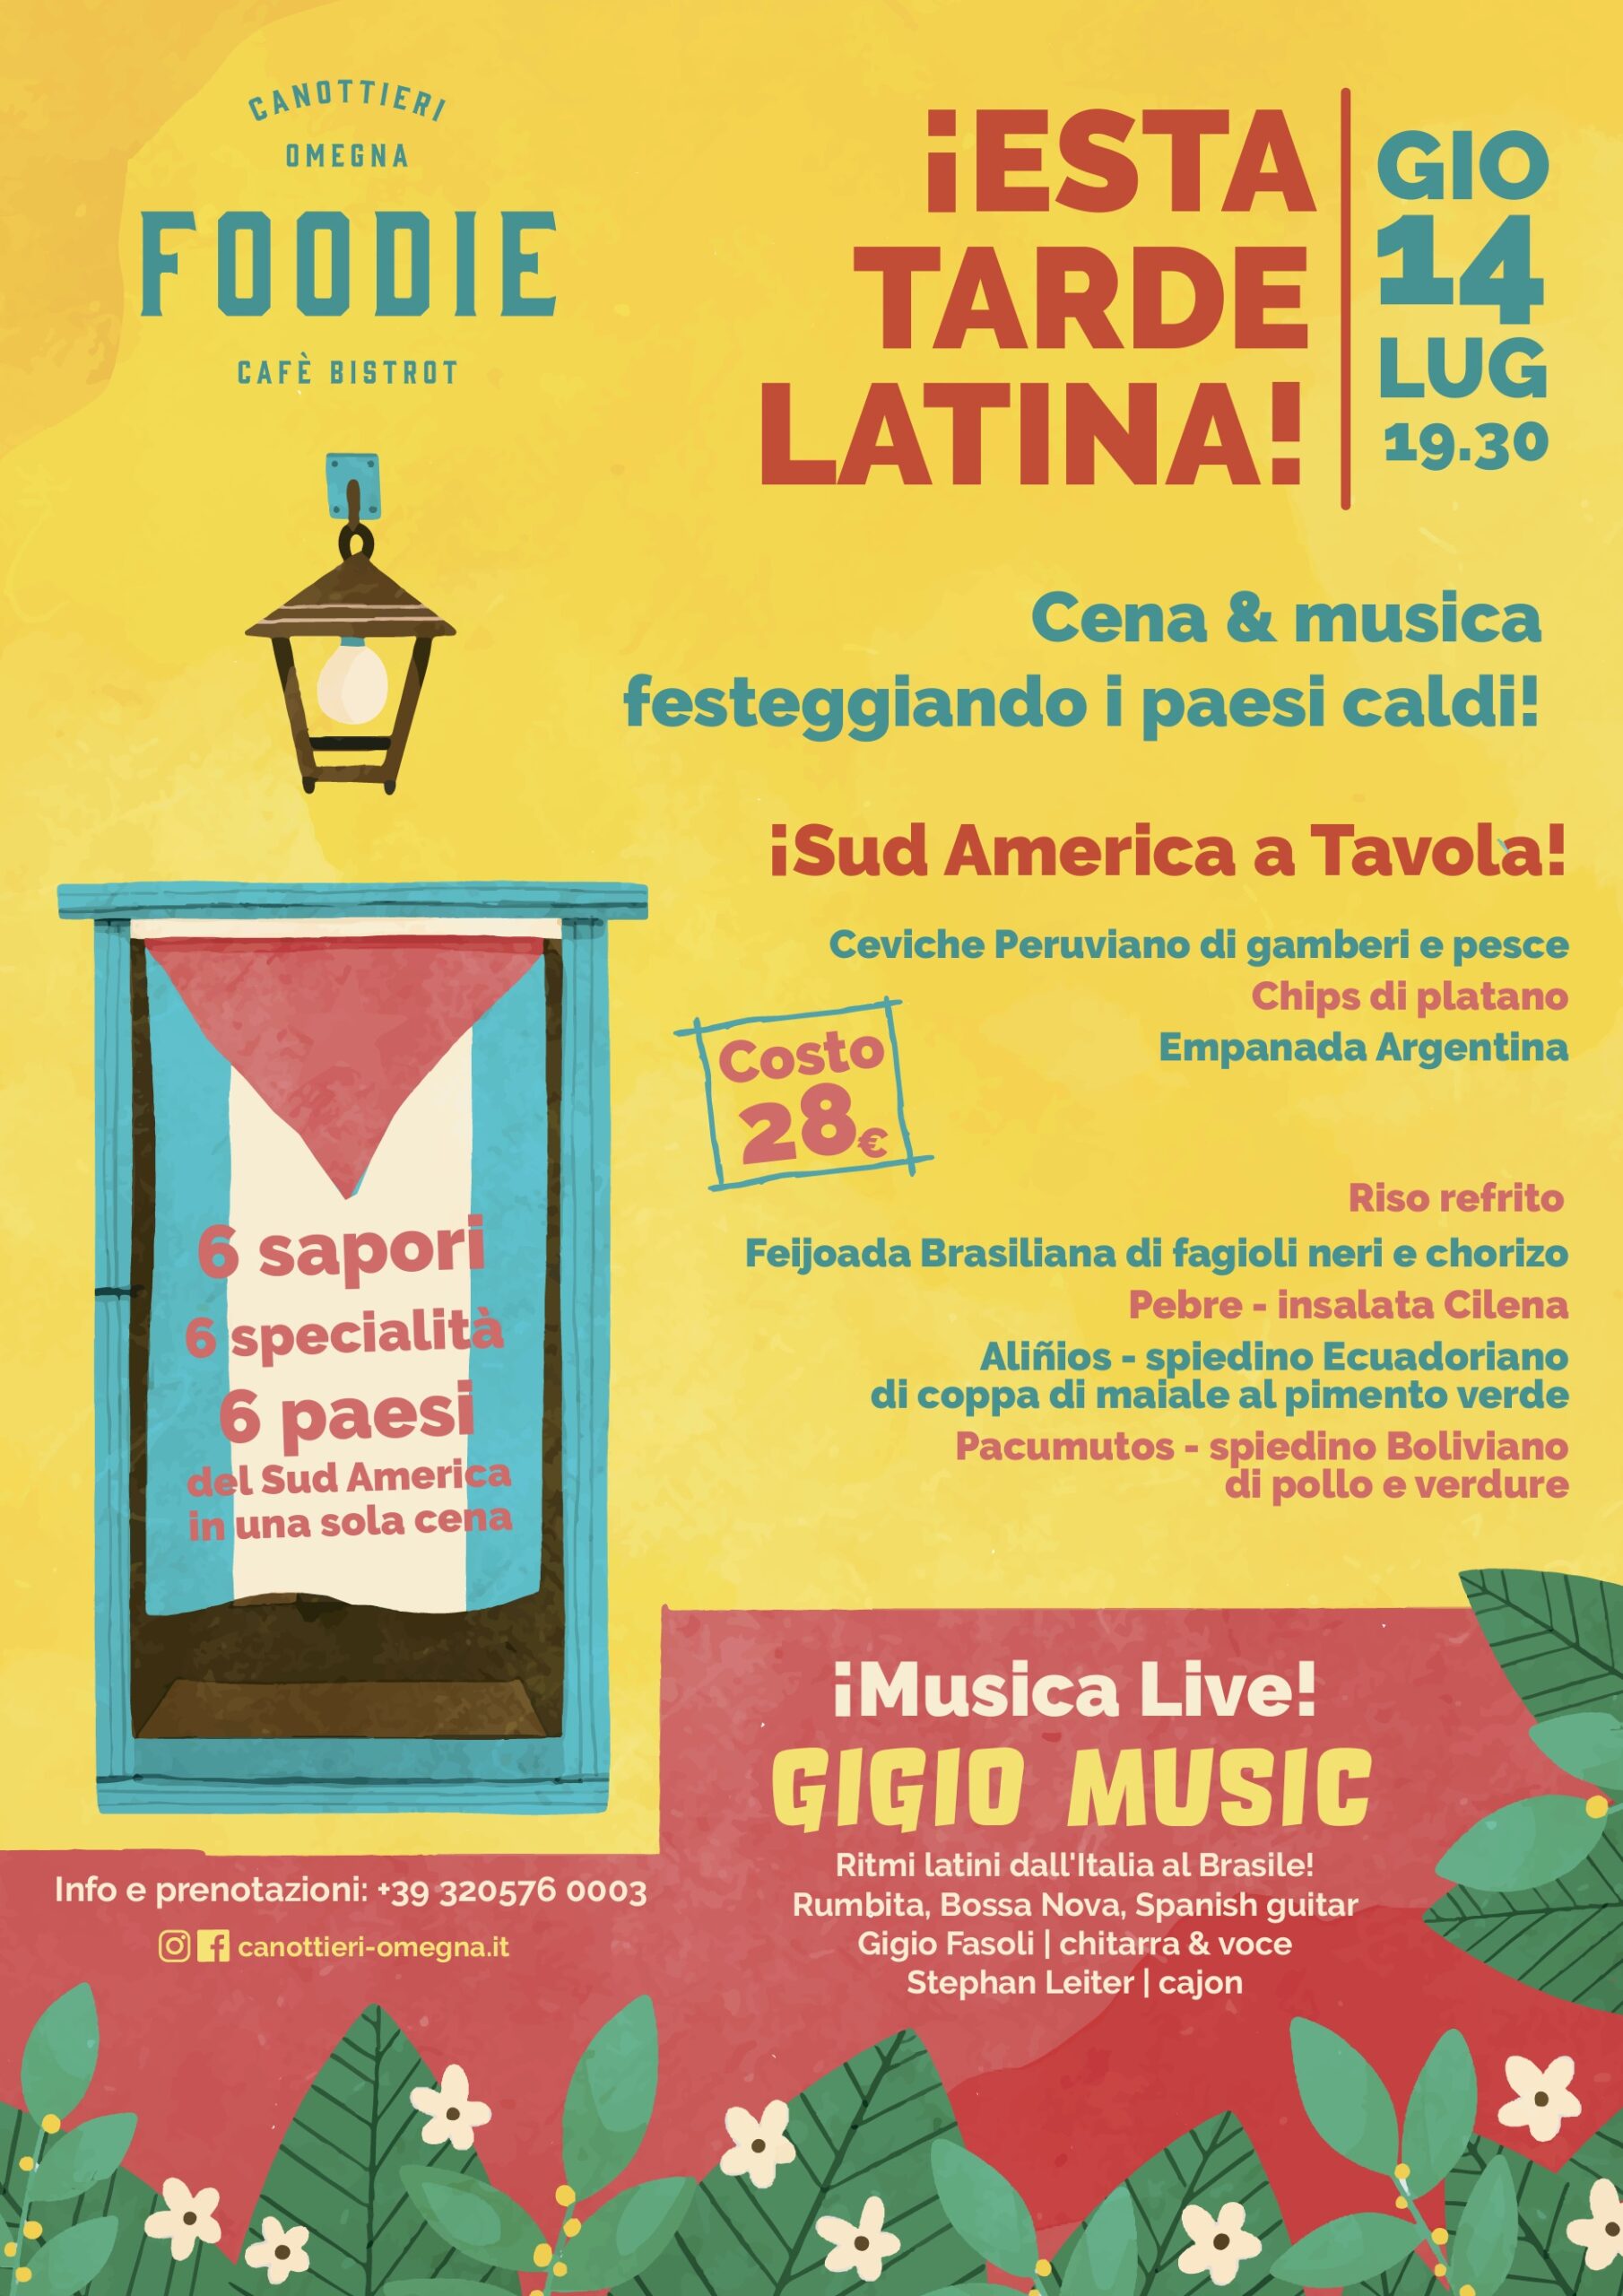 Cena Sudamericana e musica Latina live in riva al lago, mrenu con 6 specialita' dei 6 paesi del Sud America! Canottieri Omegna, 14 luglio dalle 19:30